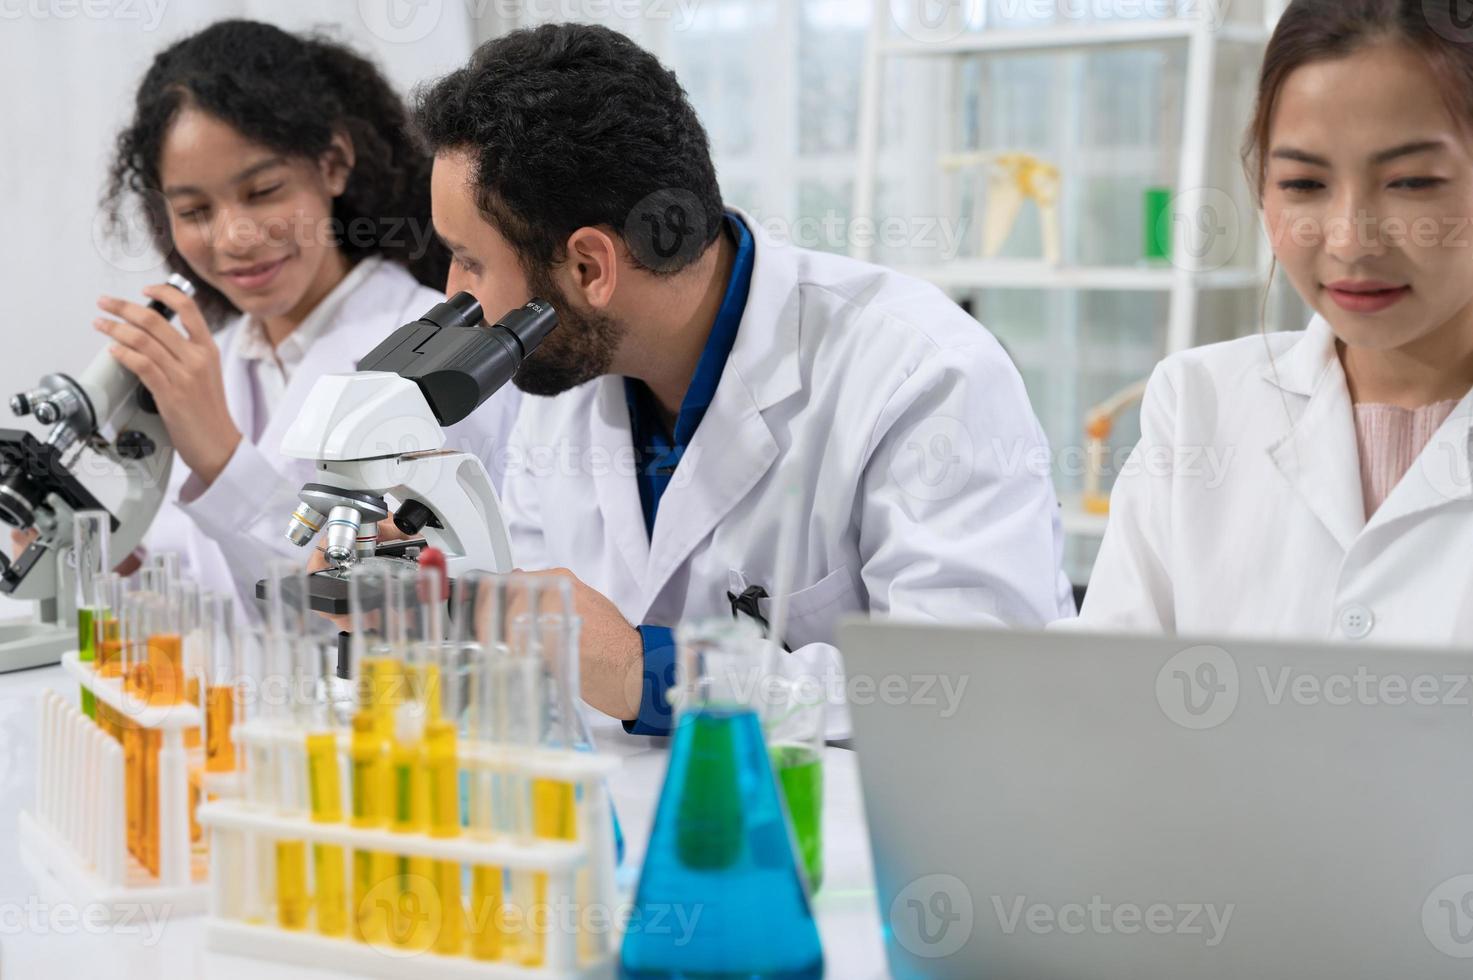 equipe de cientistas em jaleco branco trabalhando com microscópio e laptop para pesquisa em laboratório de pesquisa científica foto